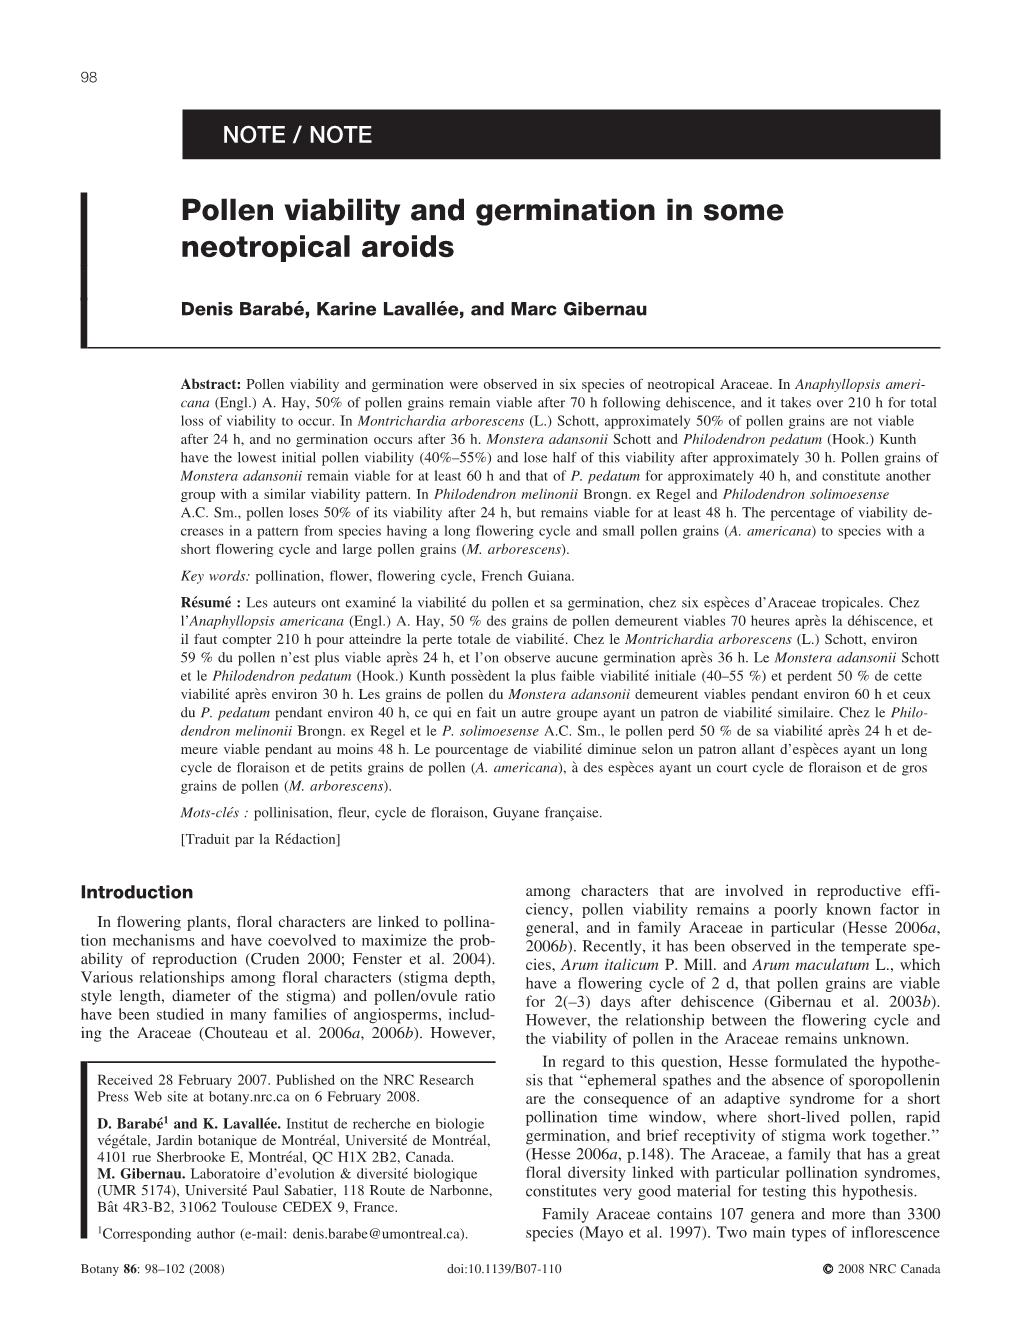 Barabé, D., K. Lavallée and M. Gibernau 2008. Pollen Viability And